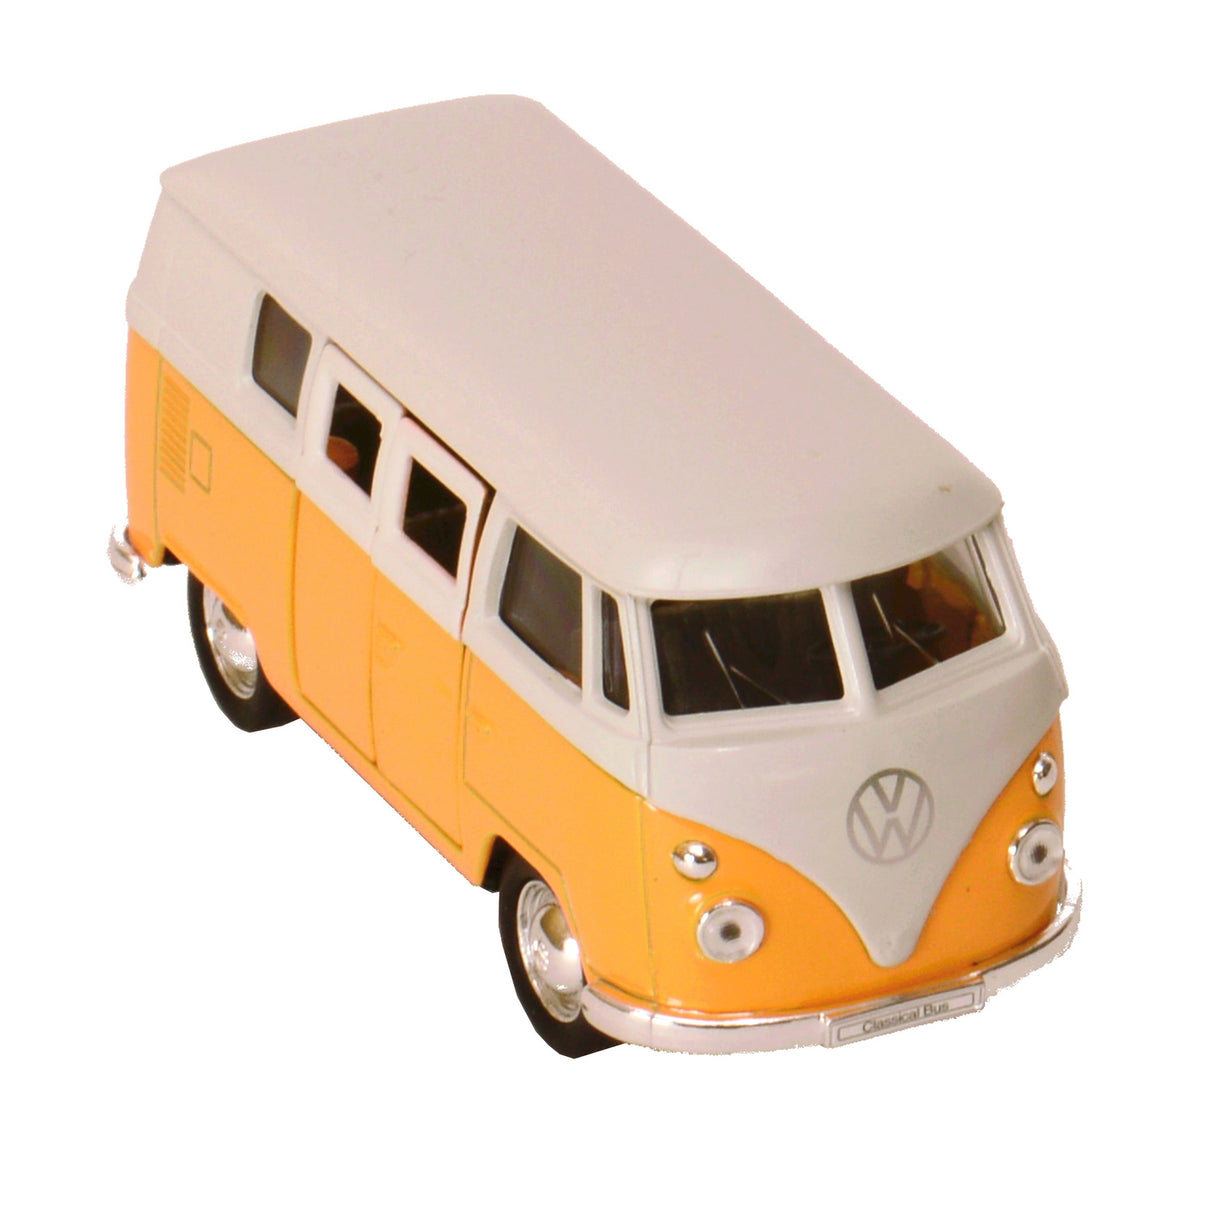 Volkswagen VW T1 Bus Modellauto mit Rückziehmotor in gelb